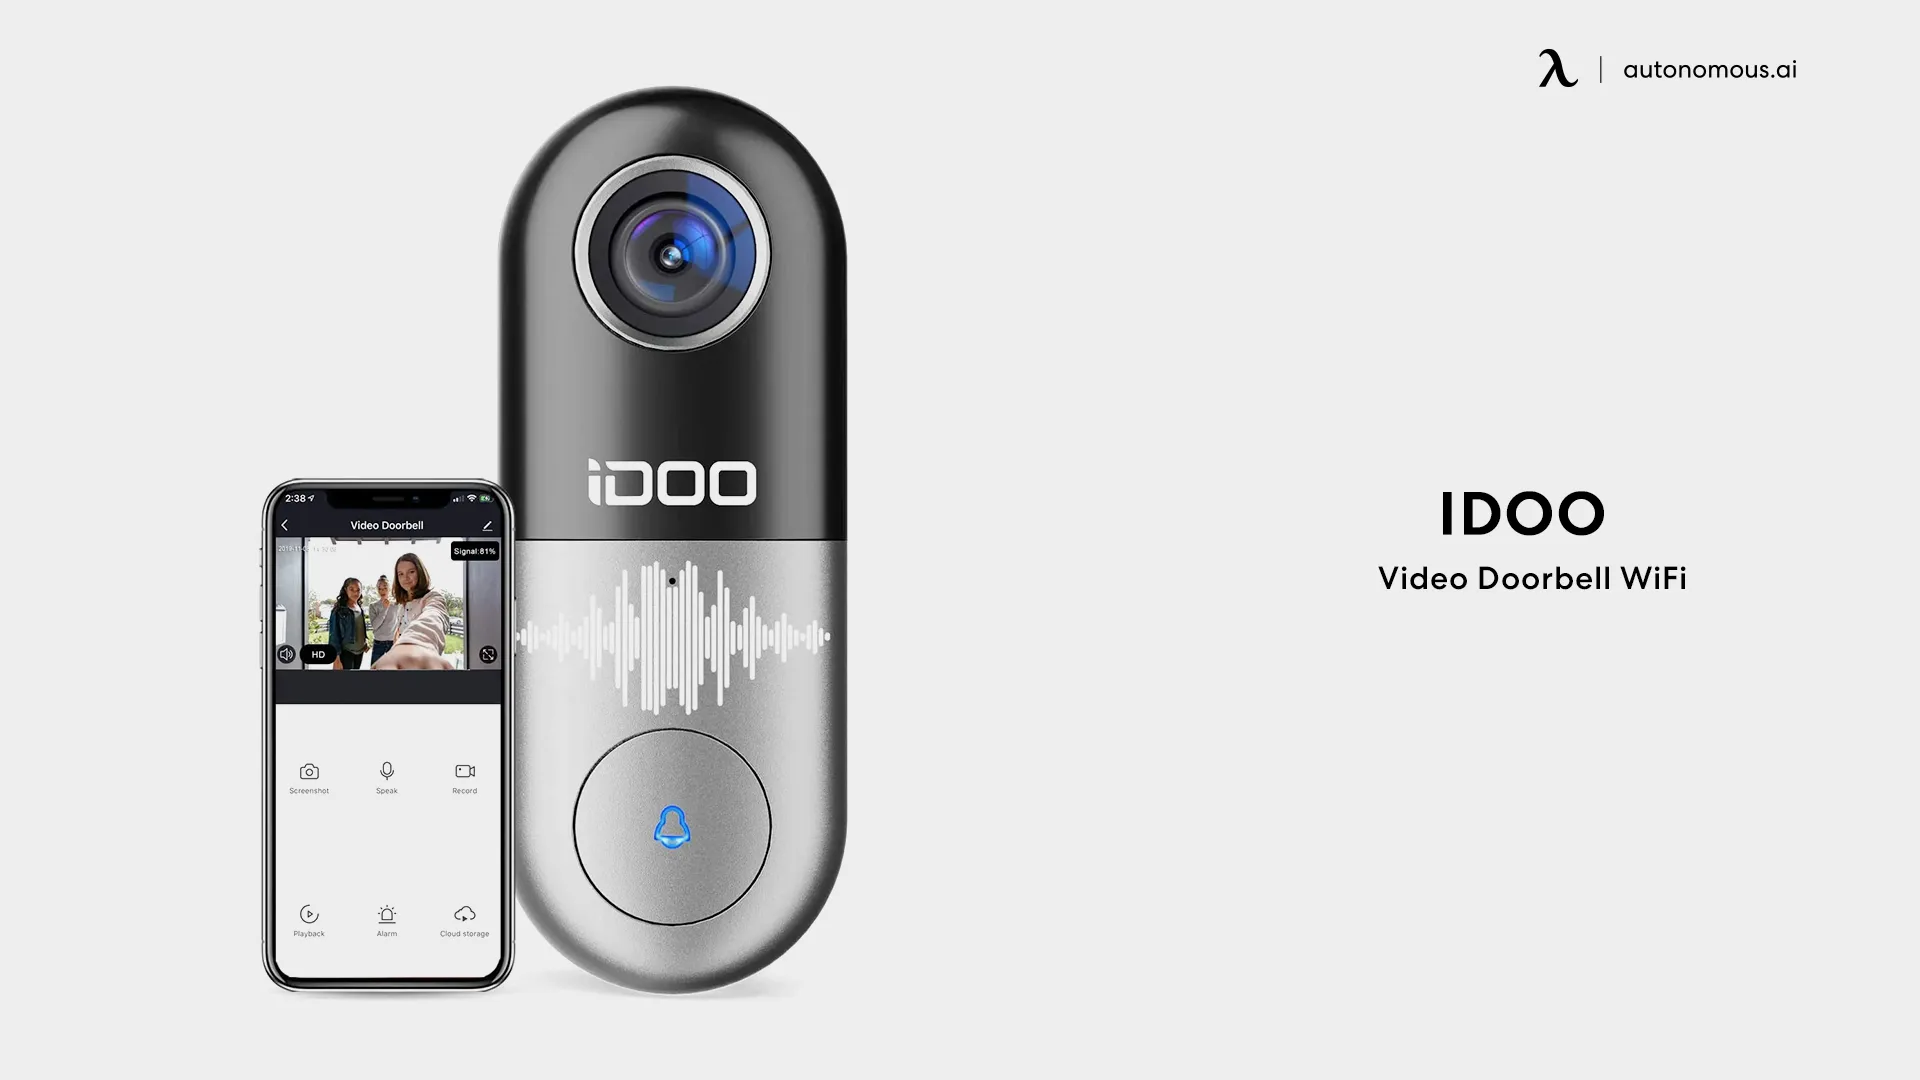 Video Doorbell WiFi - iDOO